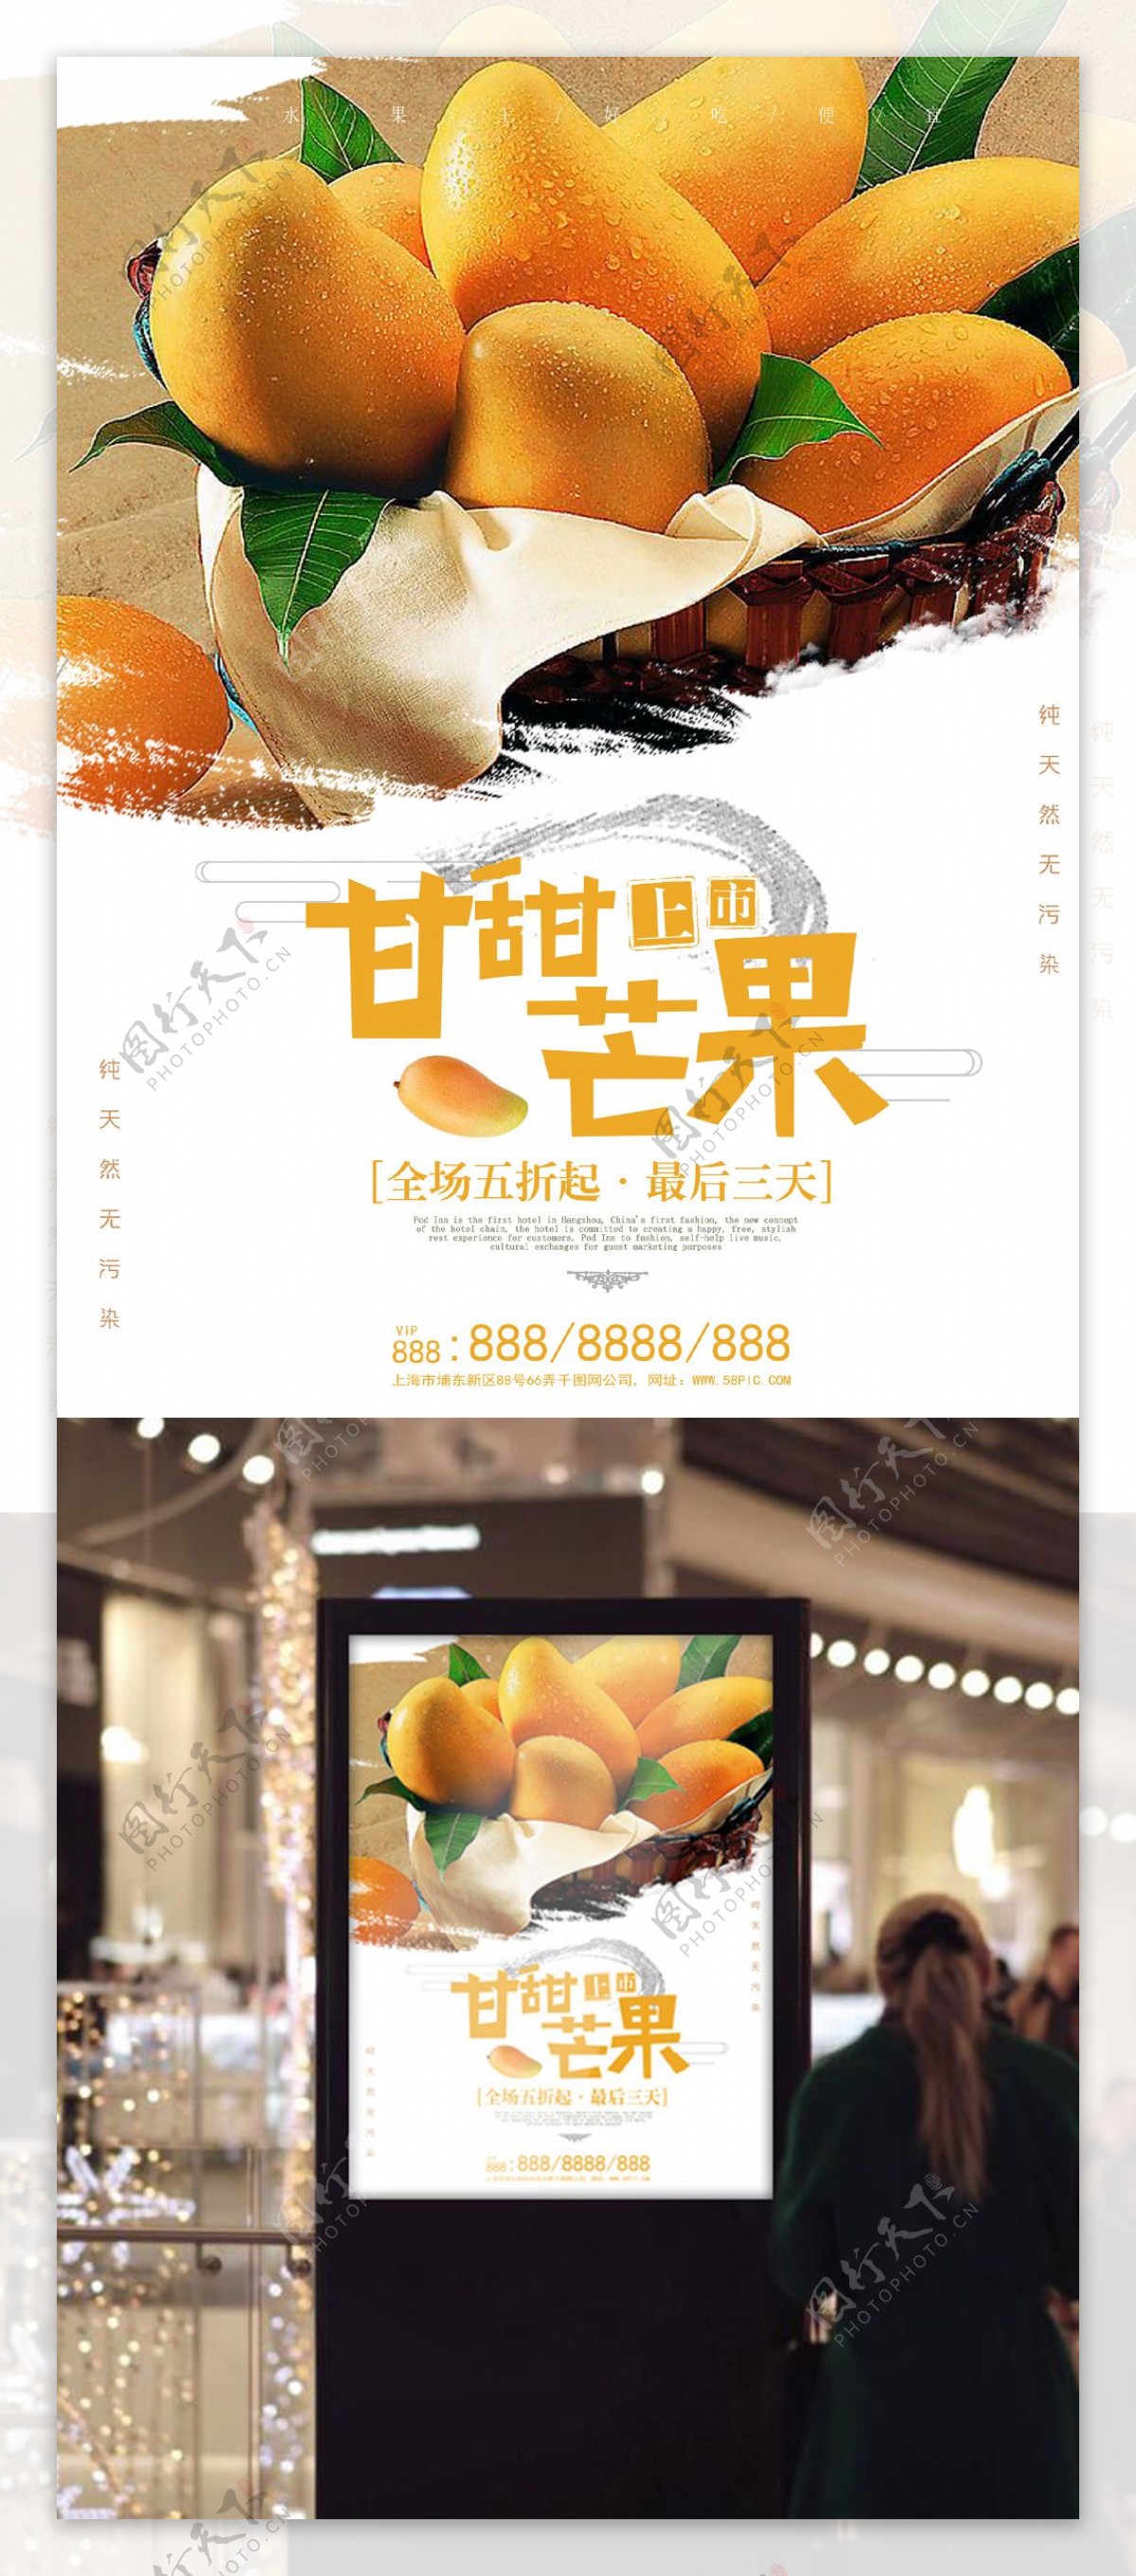 芒果水果上市促销宣传海报